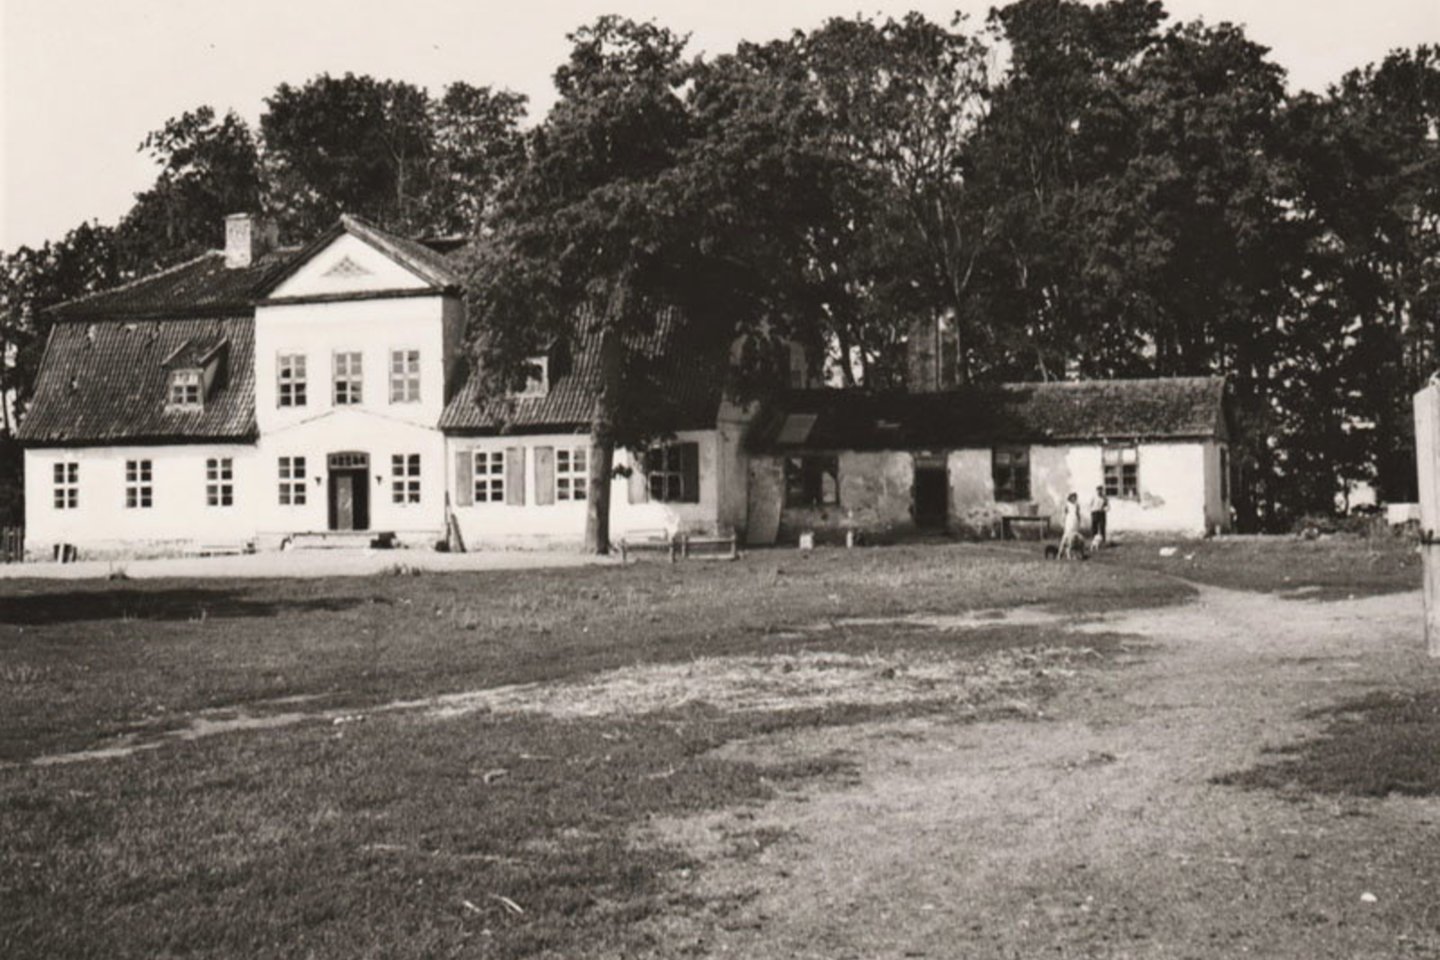 Pagrindinis Muižės dvaro pastatas 1914 m. nuotraukoje. Dvarvietėje buvę 8 statiniai, ir visus juos po truputį norima atstatyti.<br>Neumann šeimos archyvo nuotr.